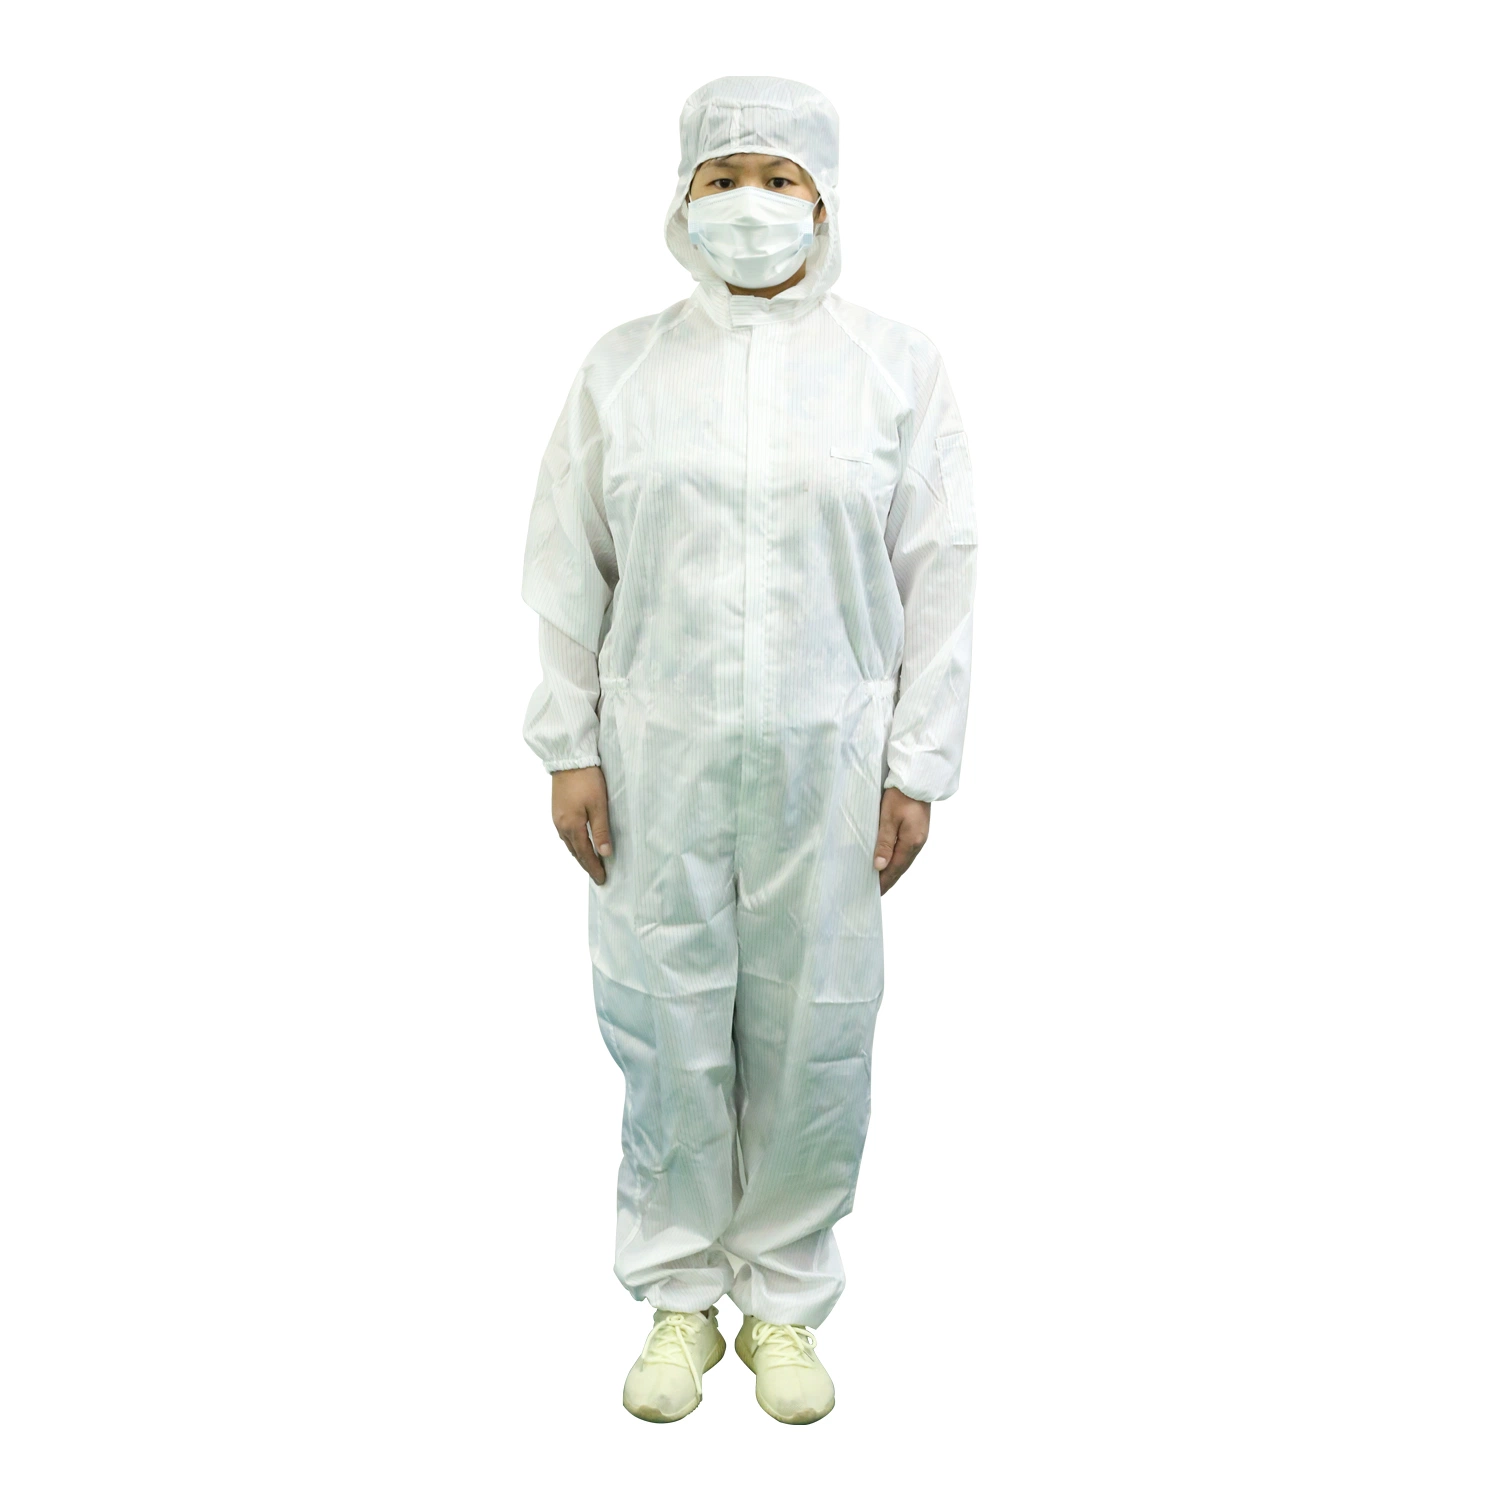 Антистатические костюмы Одежда Одежда Лаборатория одежды Cleanroom Garment